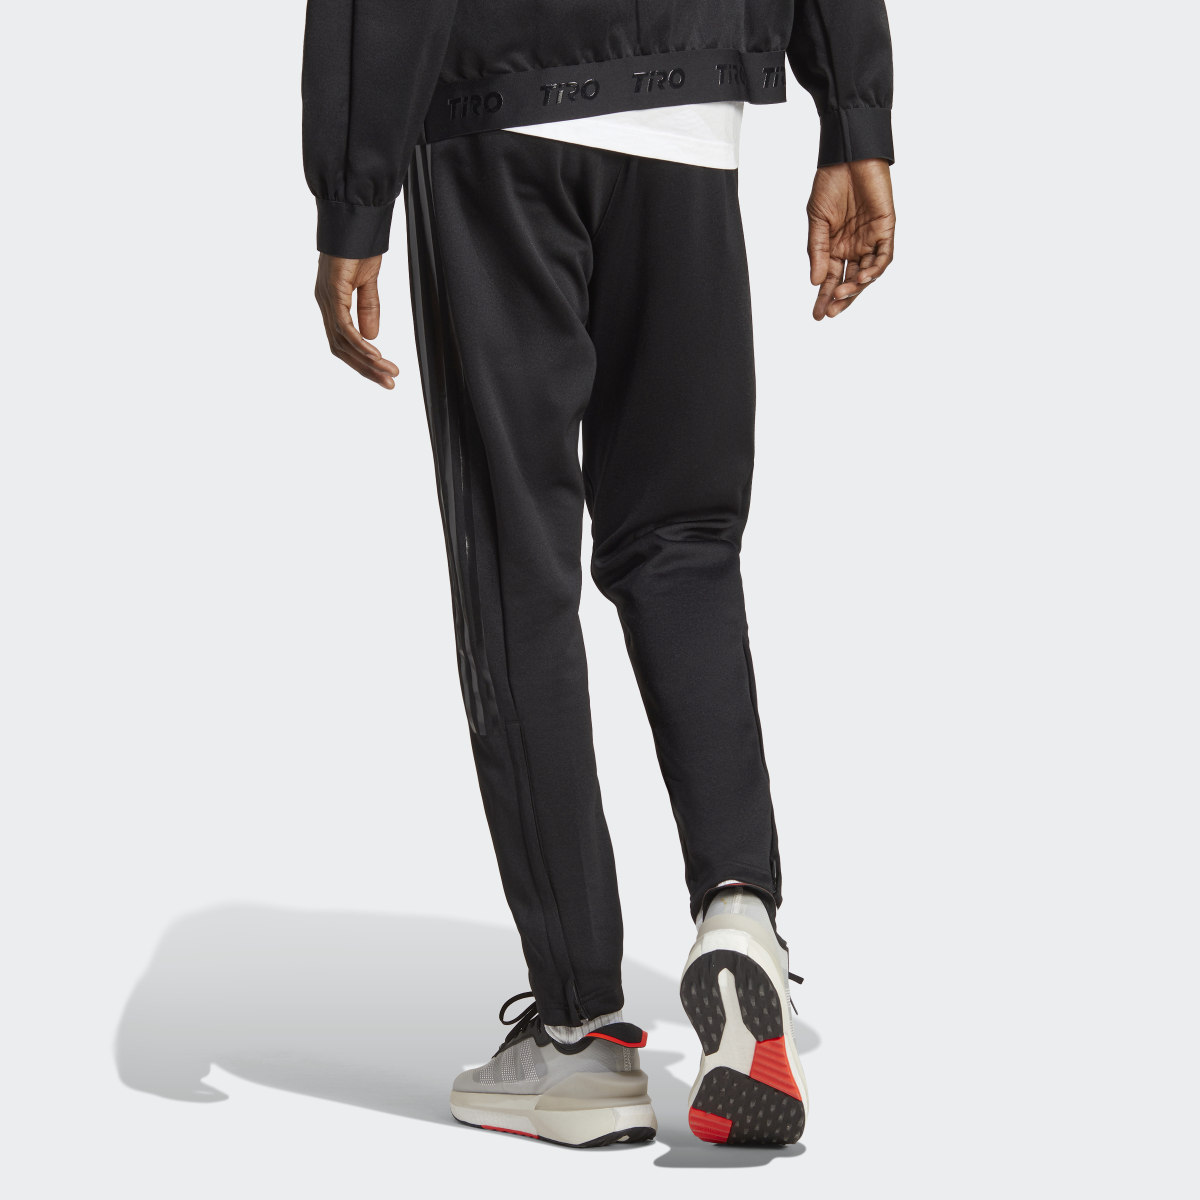 Adidas Pantalon de survêtement Tiro Suit-Up Advanced. 7